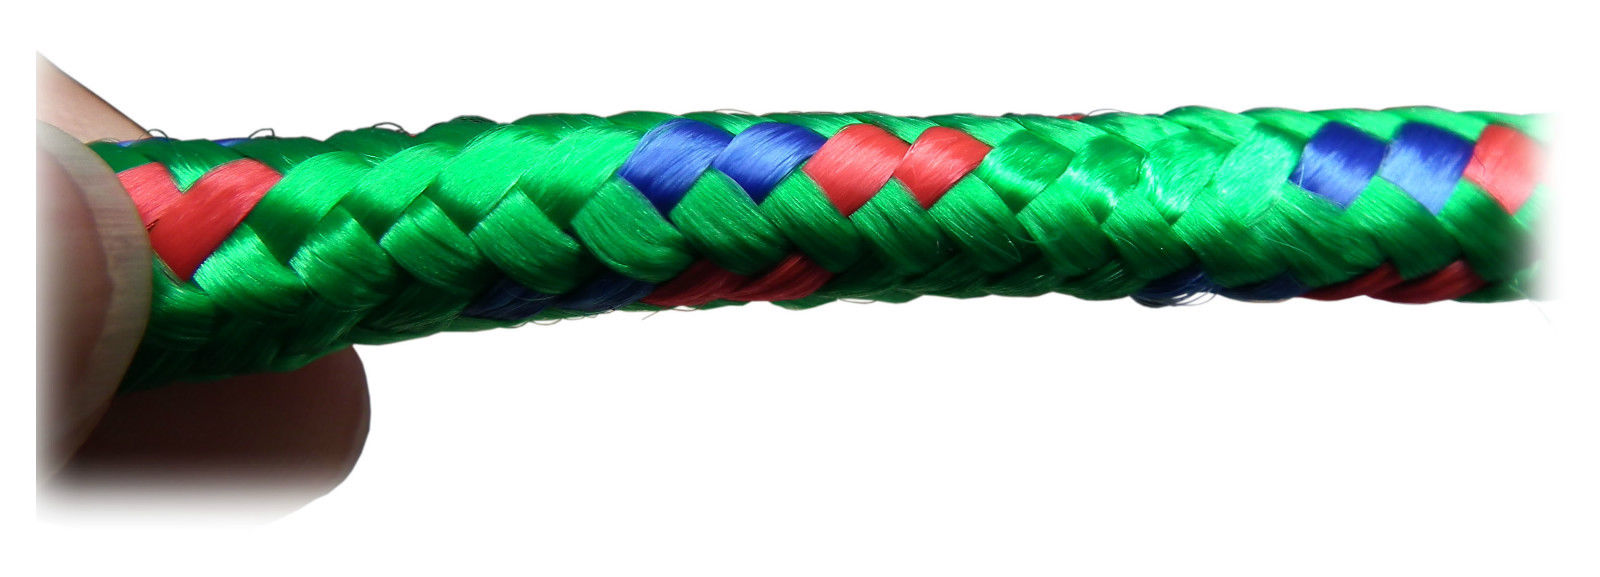 Polypropylene Rope 30M - Green